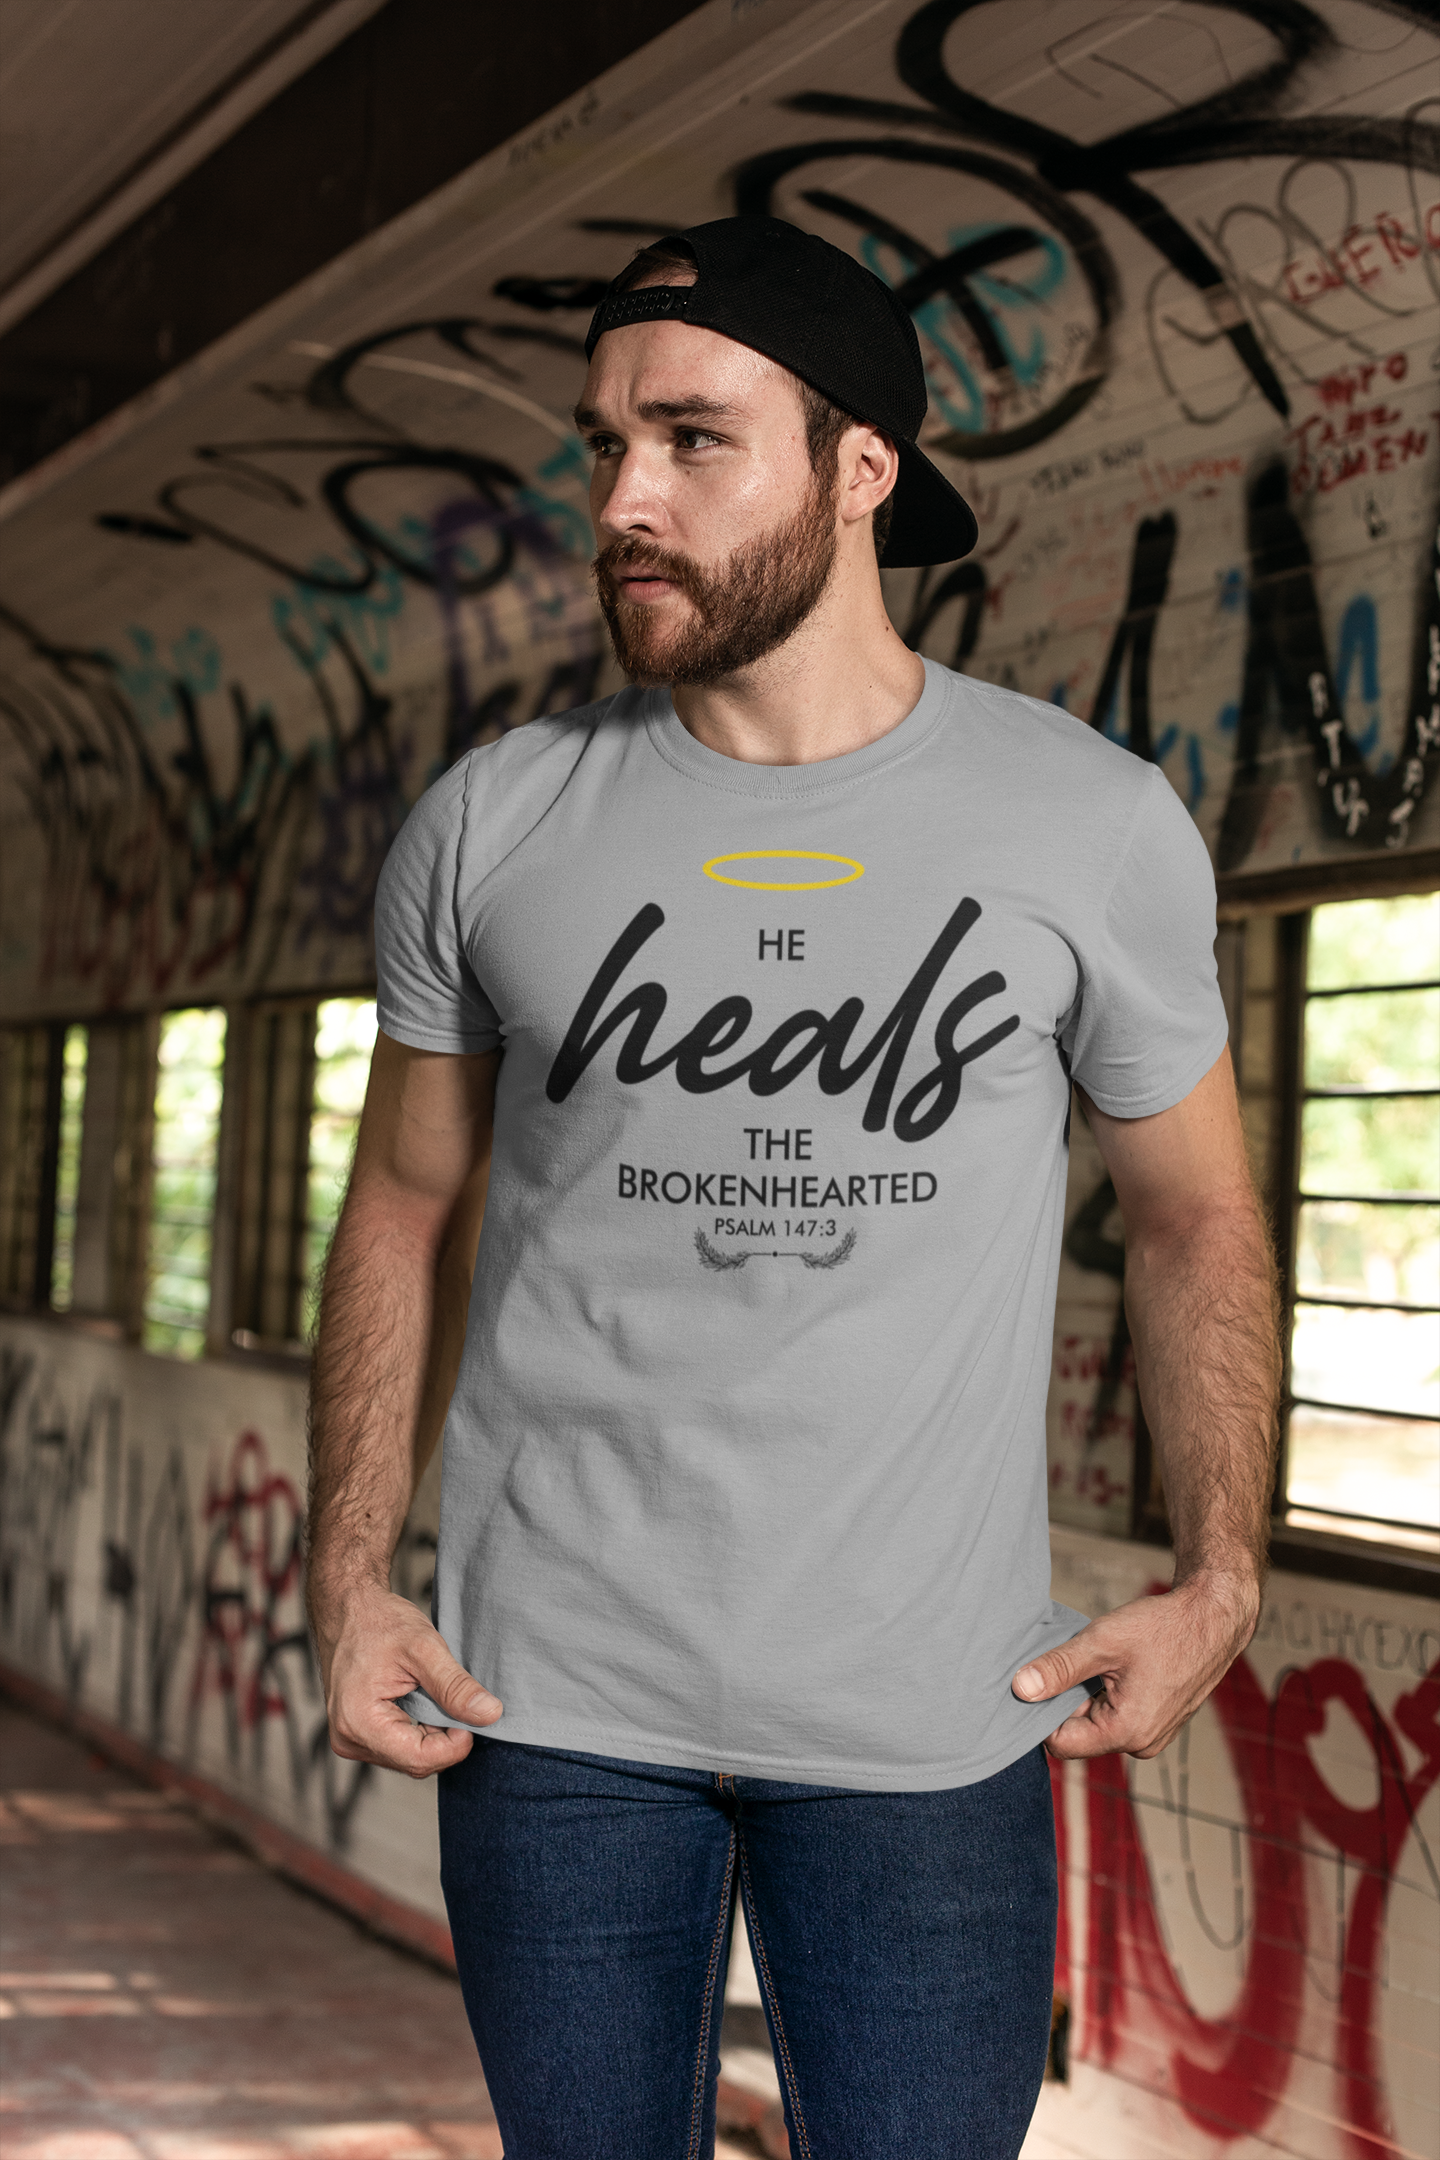 ULTRABASIC Men's T-Shirt He Heals the Broken Heart - Bible Christian Religious Shirt